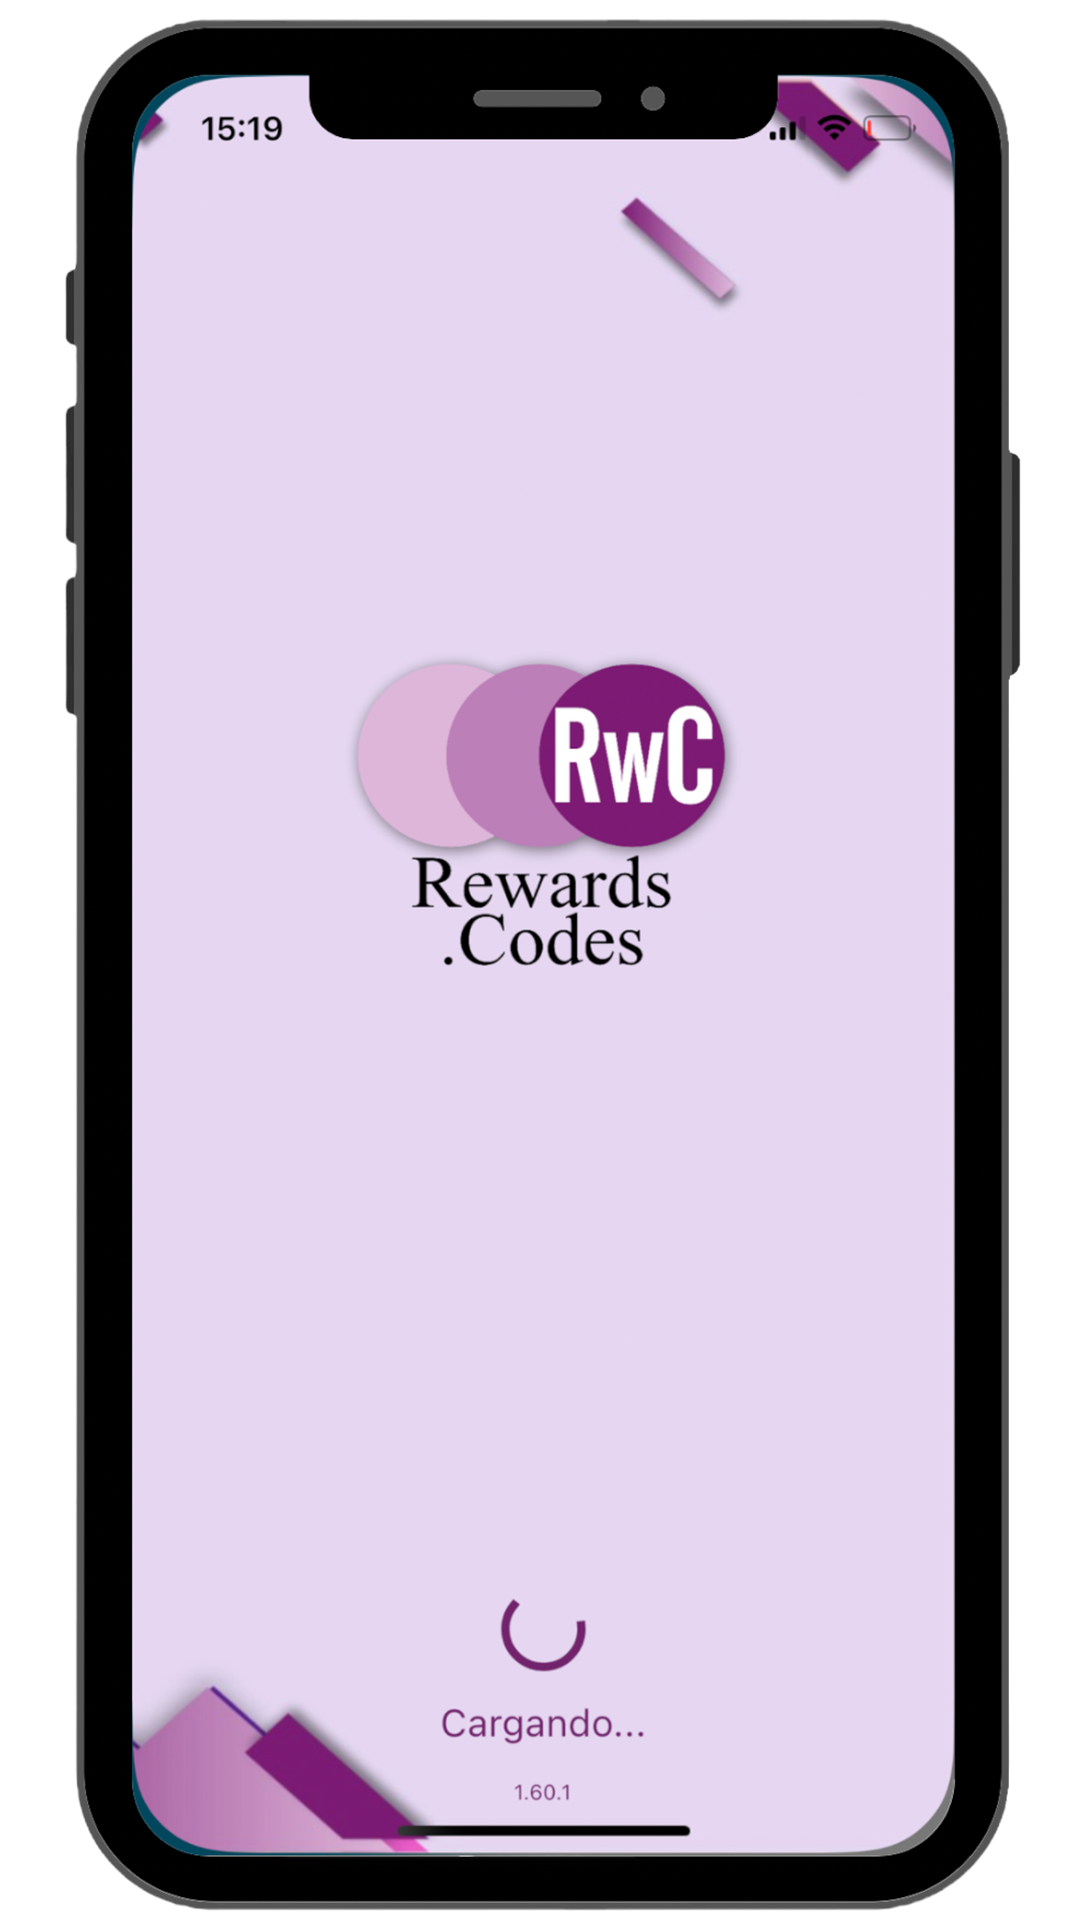 app de rewards codes